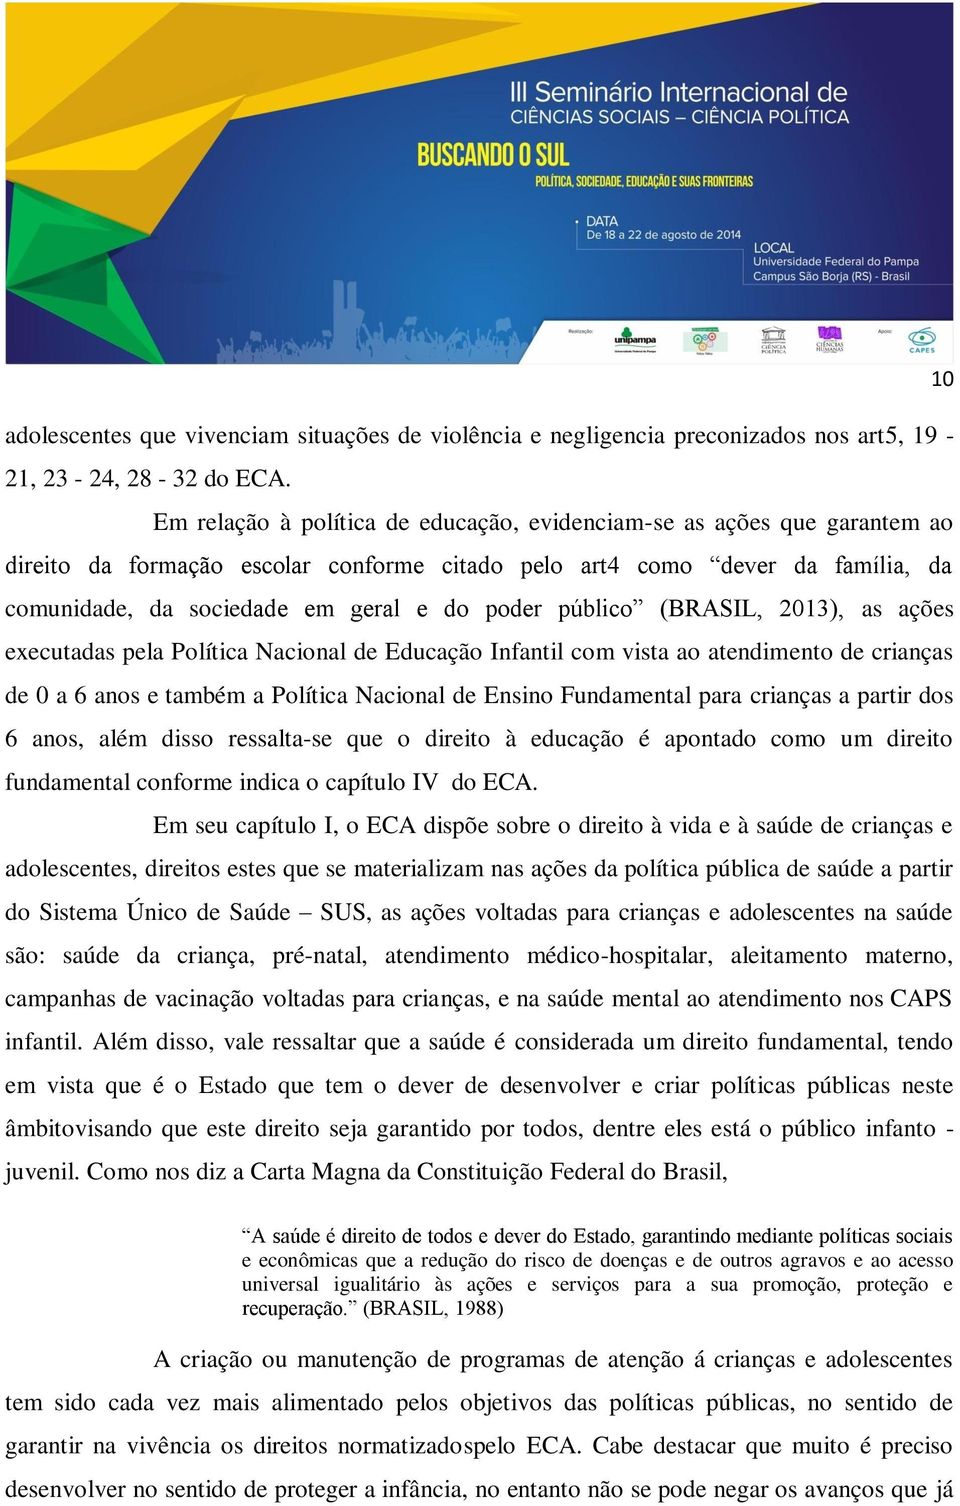 público (BRASIL, 2013), as ações executadas pela Política Nacional de Educação Infantil com vista ao atendimento de crianças de 0 a 6 anos e também a Política Nacional de Ensino Fundamental para